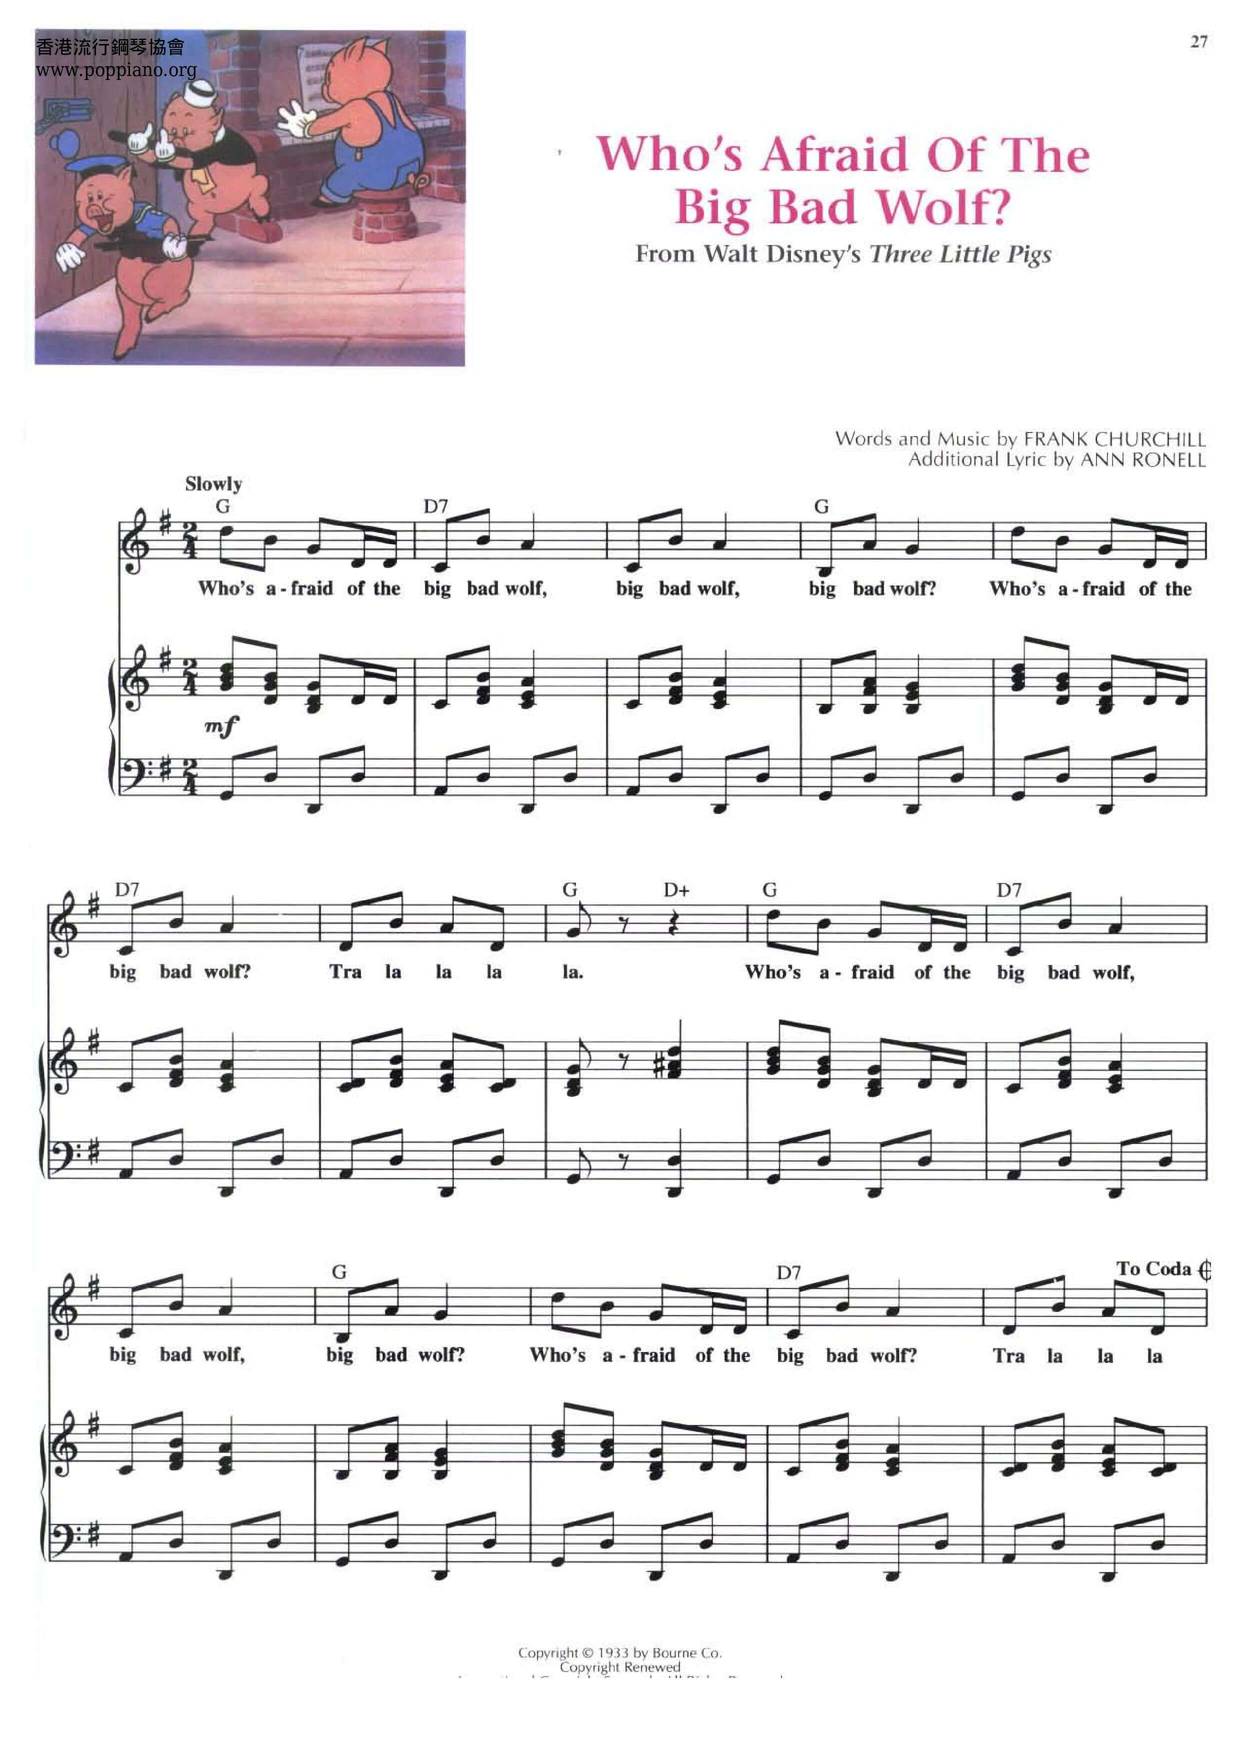 ディズニー Treasury Of Disney Songs 221 Pages ピアノ譜pdf 香港ポップピアノ協会 無料pdf楽譜ダウンロード Gakufu